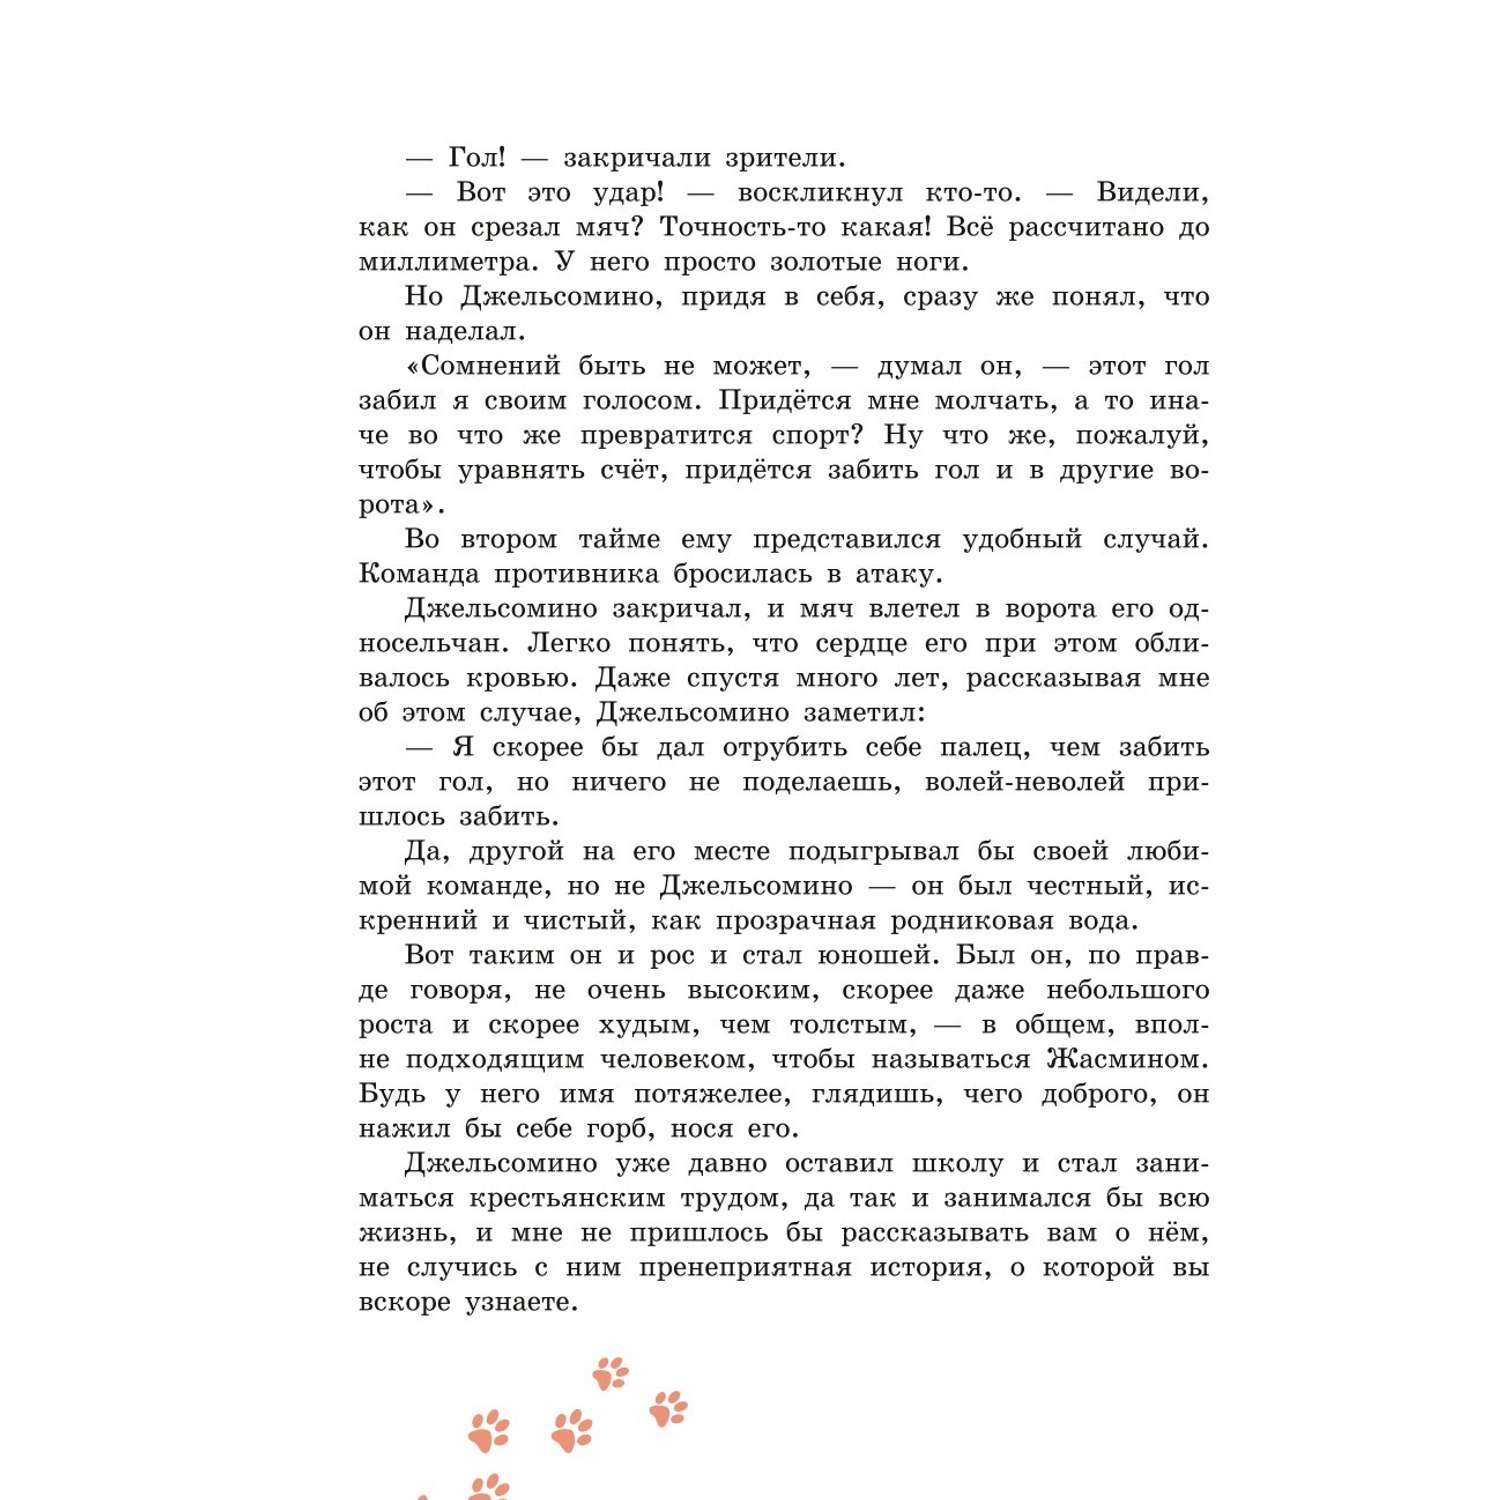 Книга Эксмо Джельсомино в Стране лжецов иллюстрации Вердини перевод Махова - фото 7